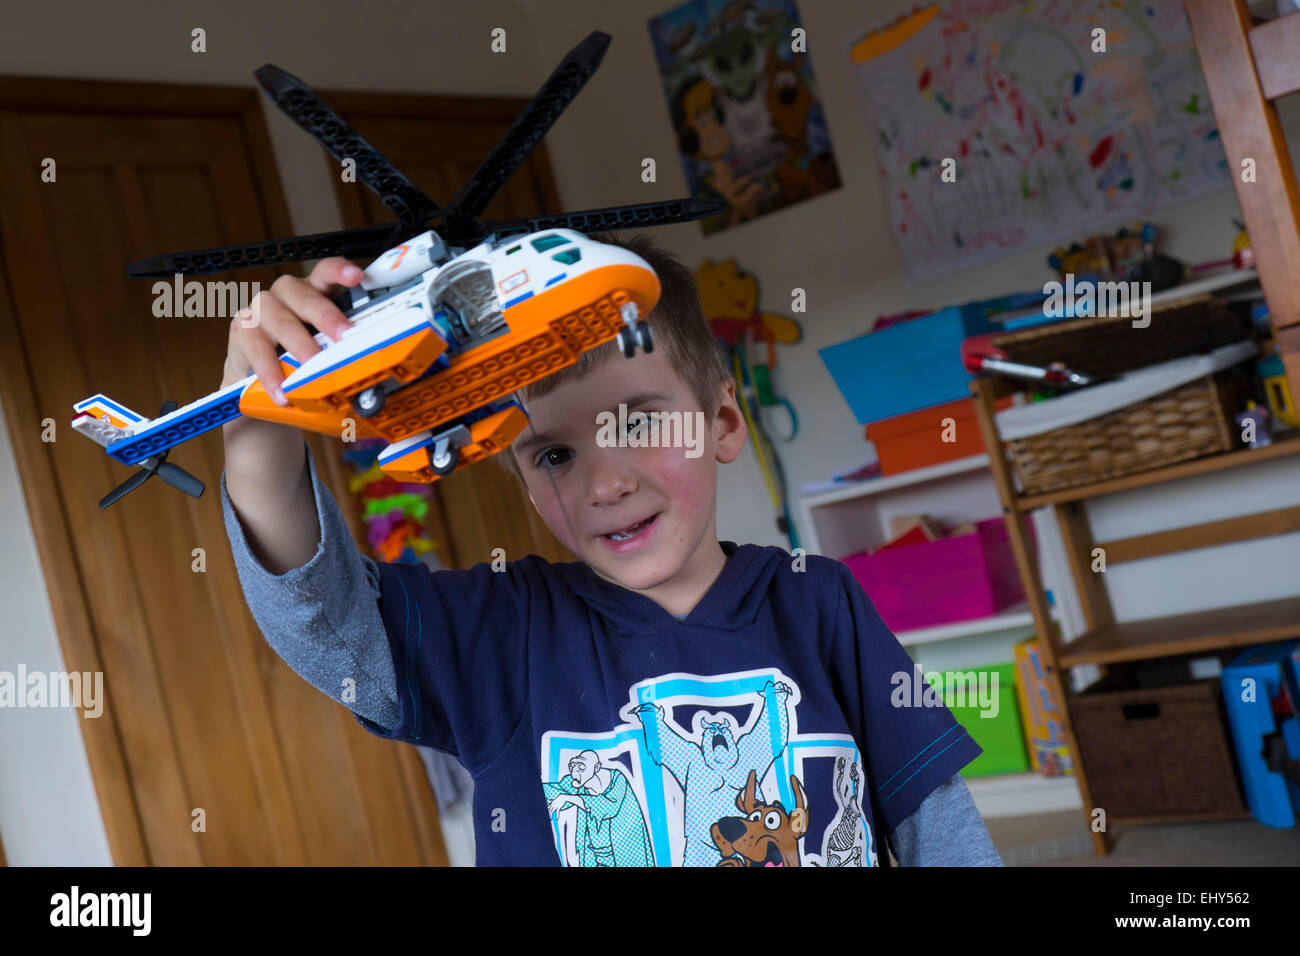 Garçon âgé de quatre ans à jouer avec des blocs Lego hélicoptère, dans la chambre Banque D'Images